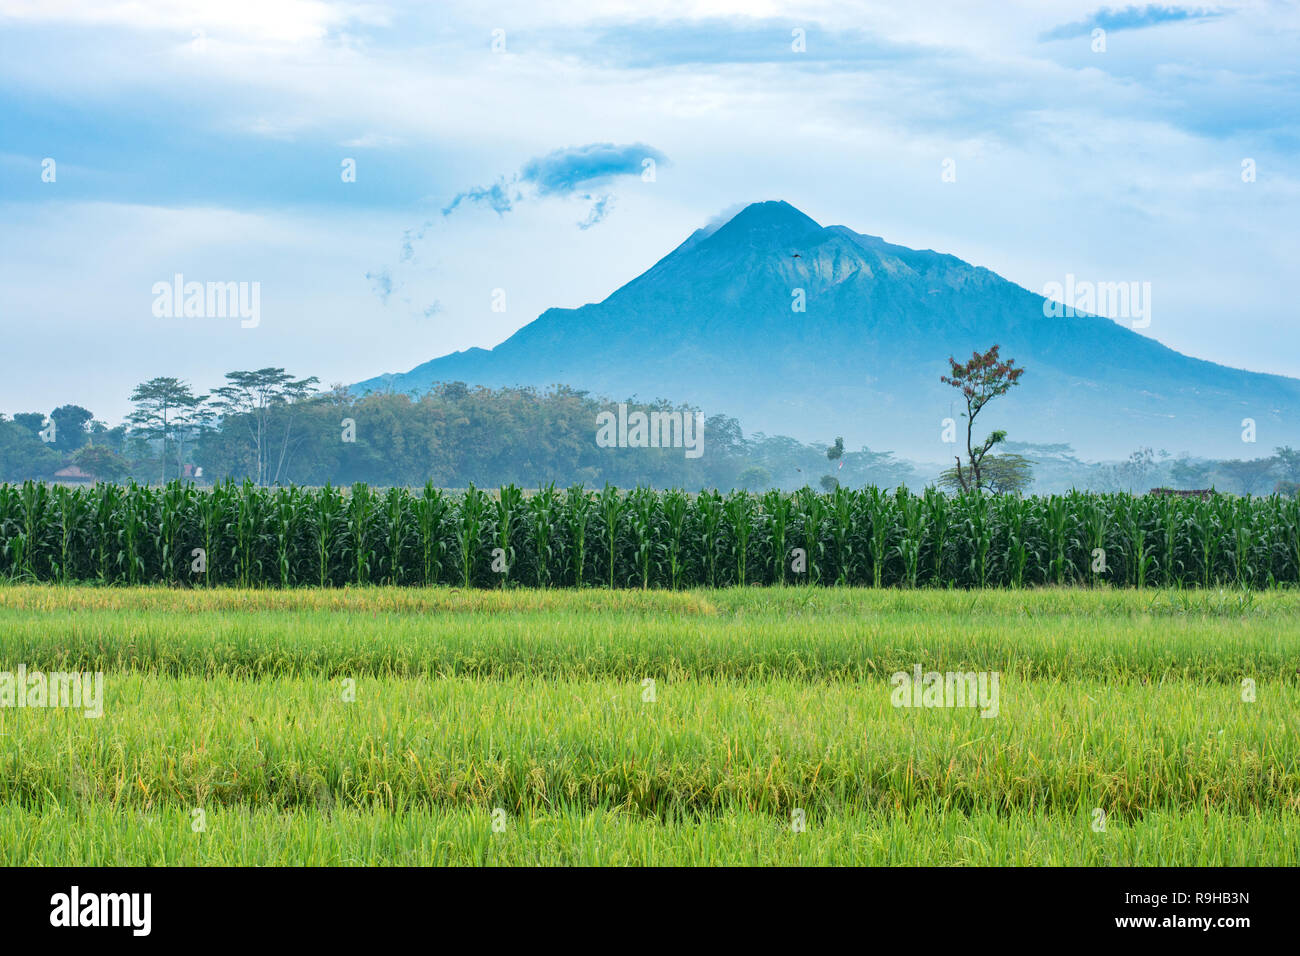 Les terres agricoles en Indonésie avec le volcan Mt Merapi s'élevant dans les nuages. Image paysage. Banque D'Images